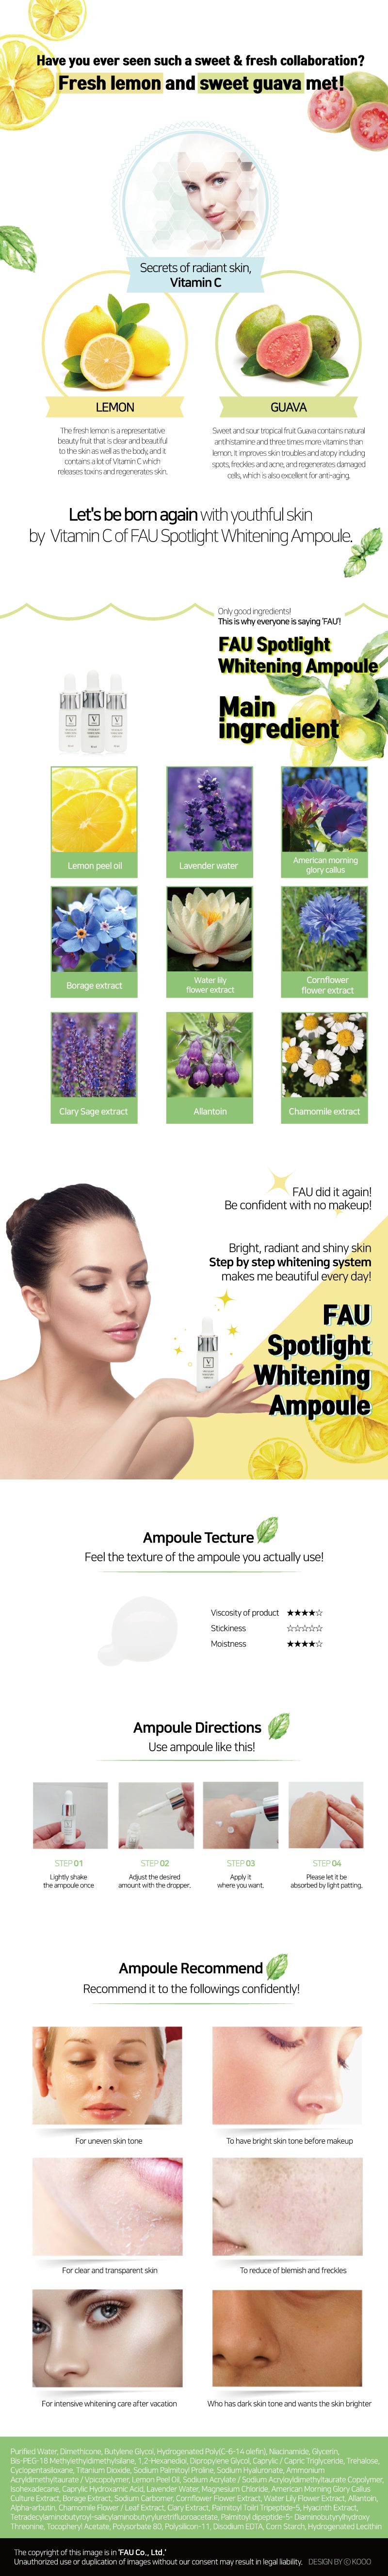 FAU Spotlight Whitening Ampoule Information 2